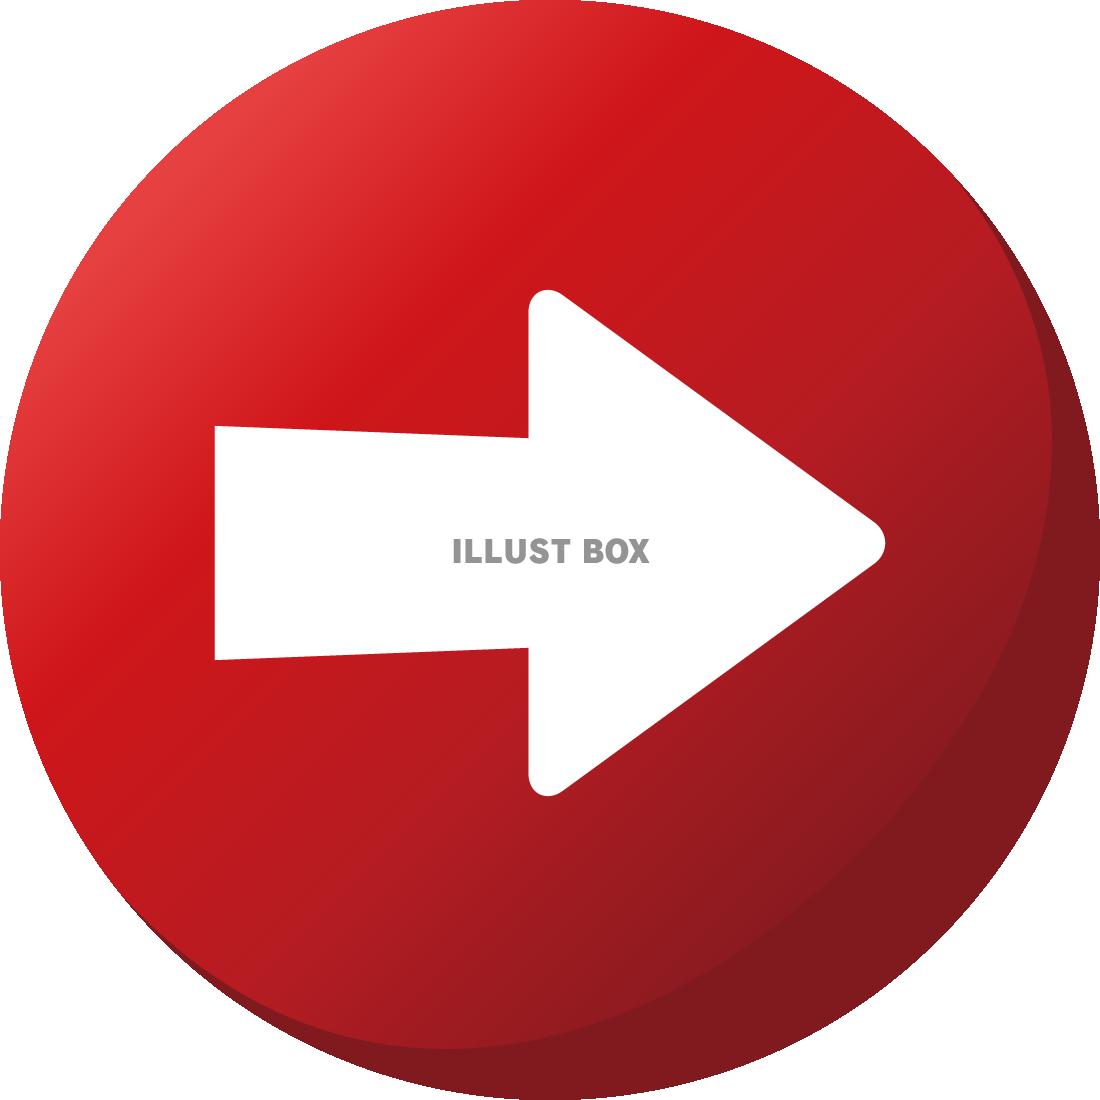 無料イラスト かわいいゲーム風 矢印の丸ボタン 赤 イラストフリー素材